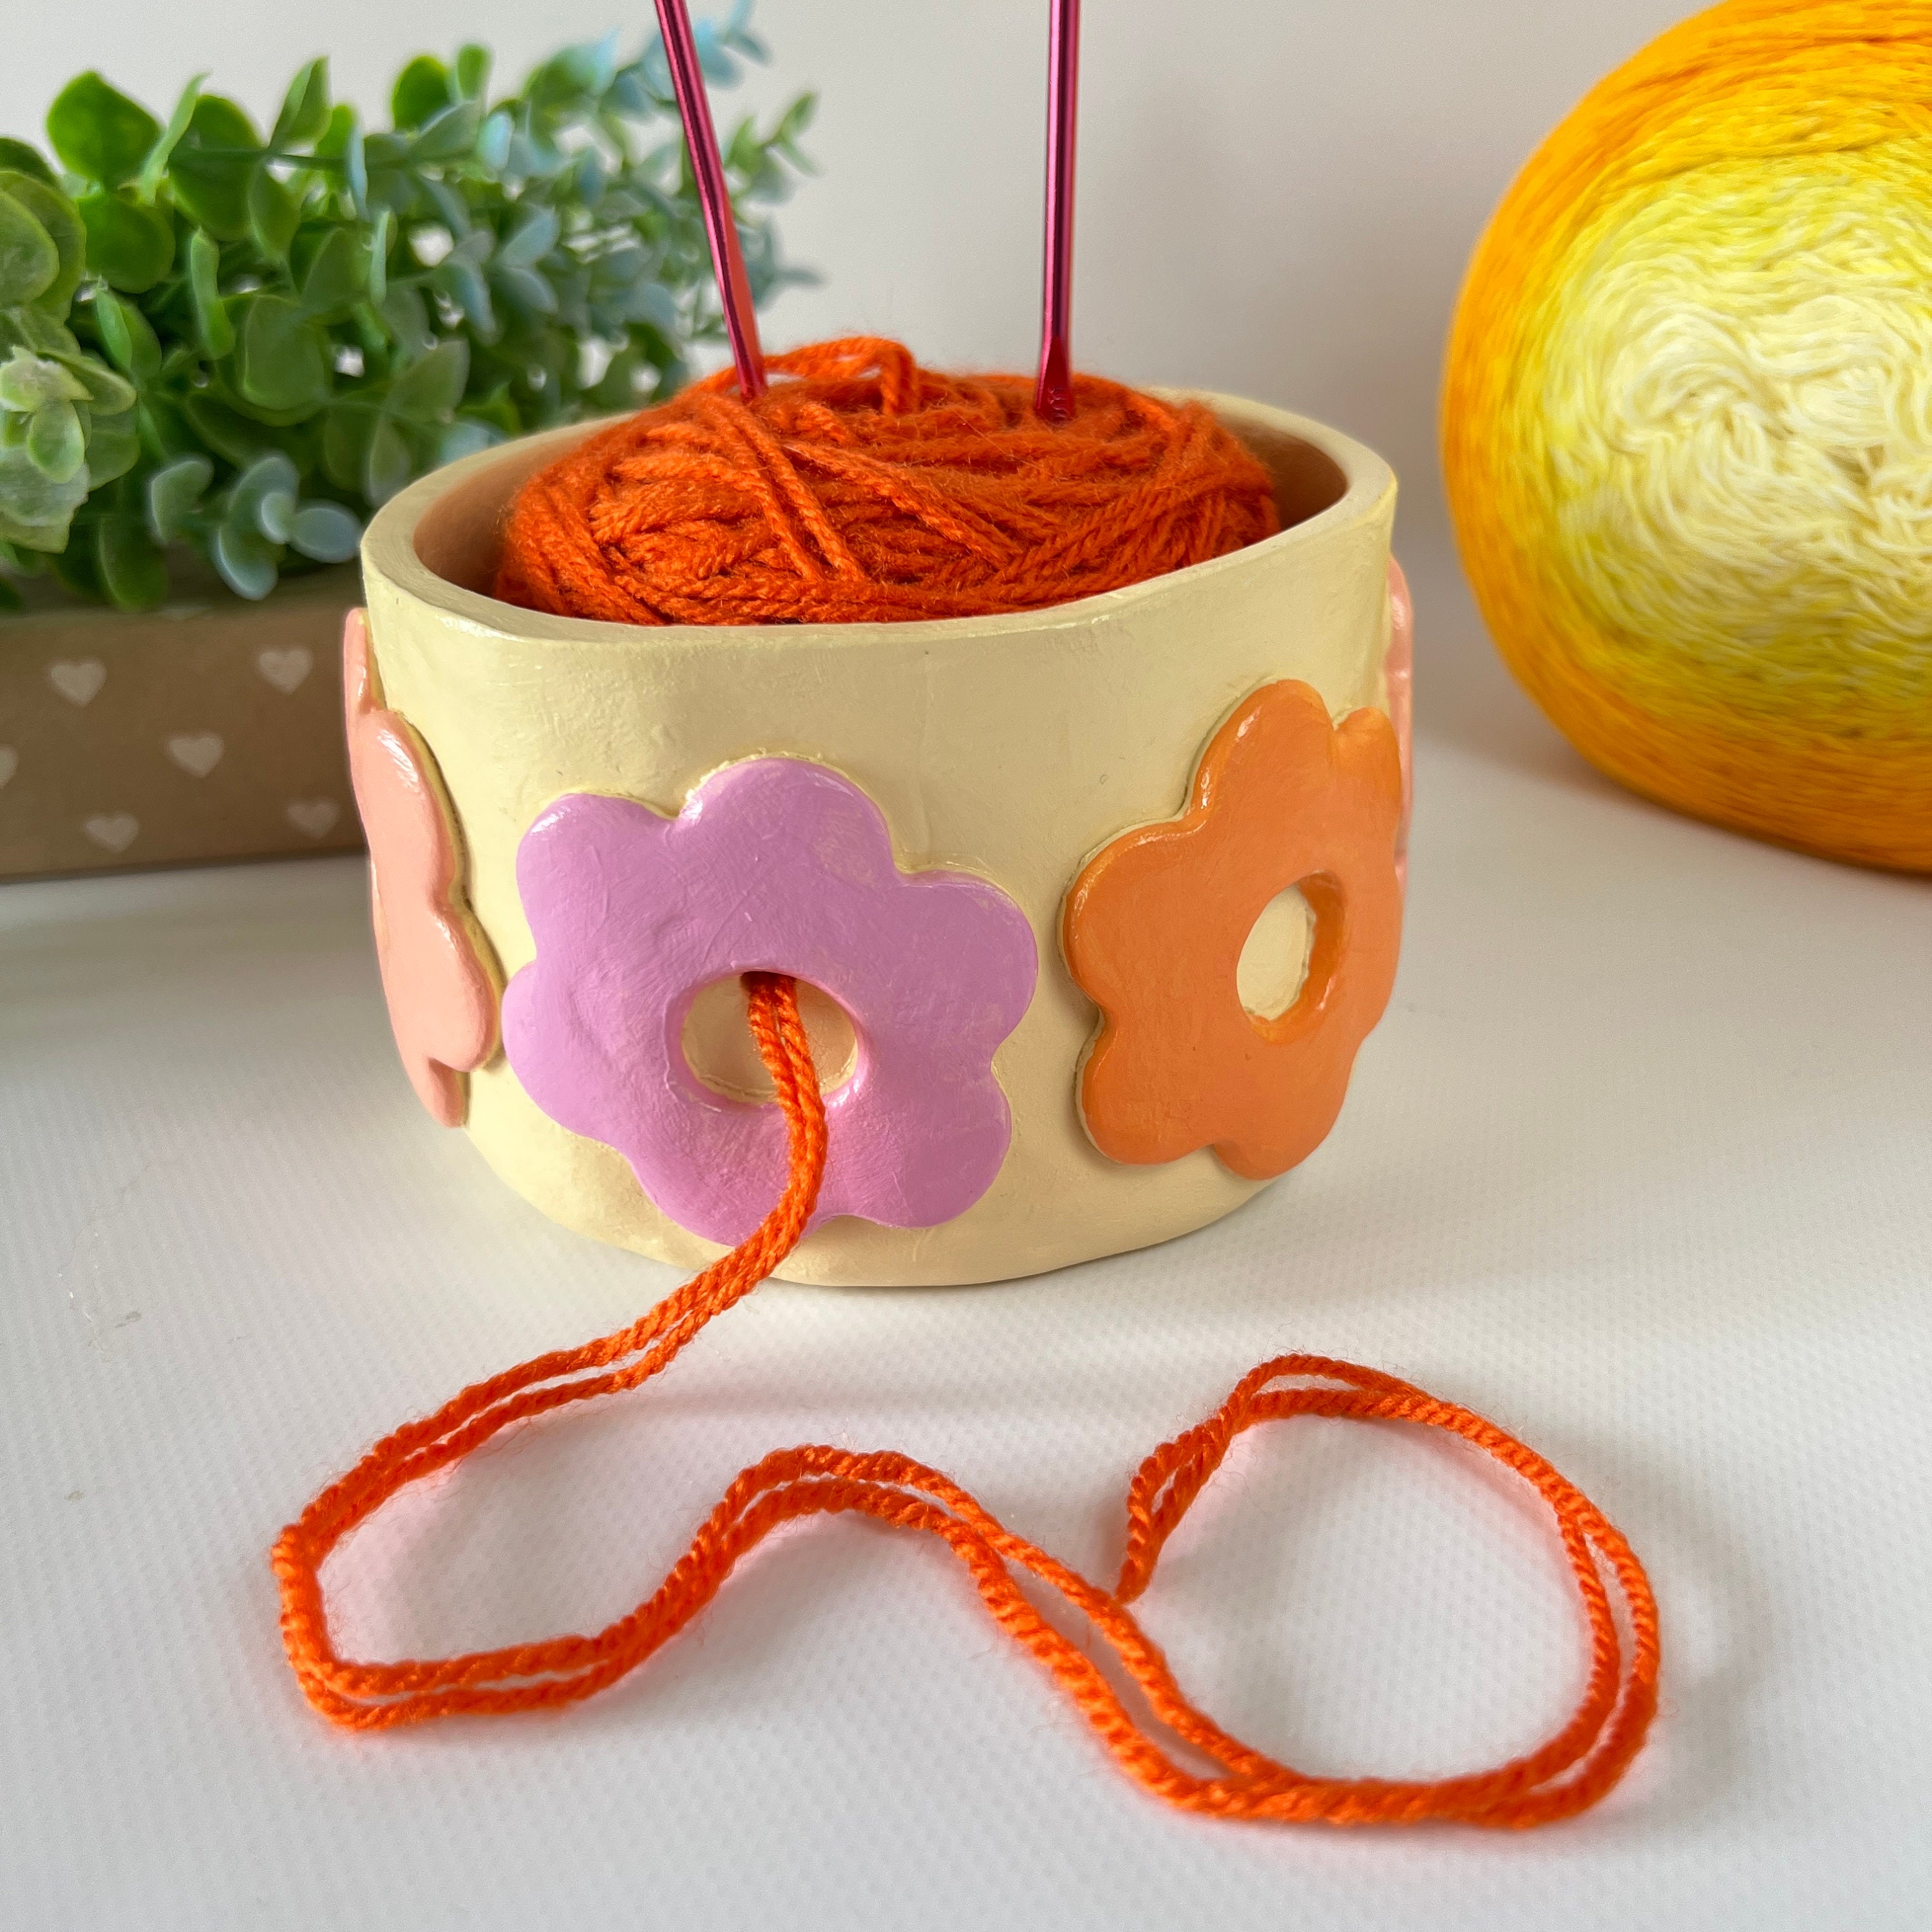 Small Dharma Yarn Bowl – FurlsCrochet